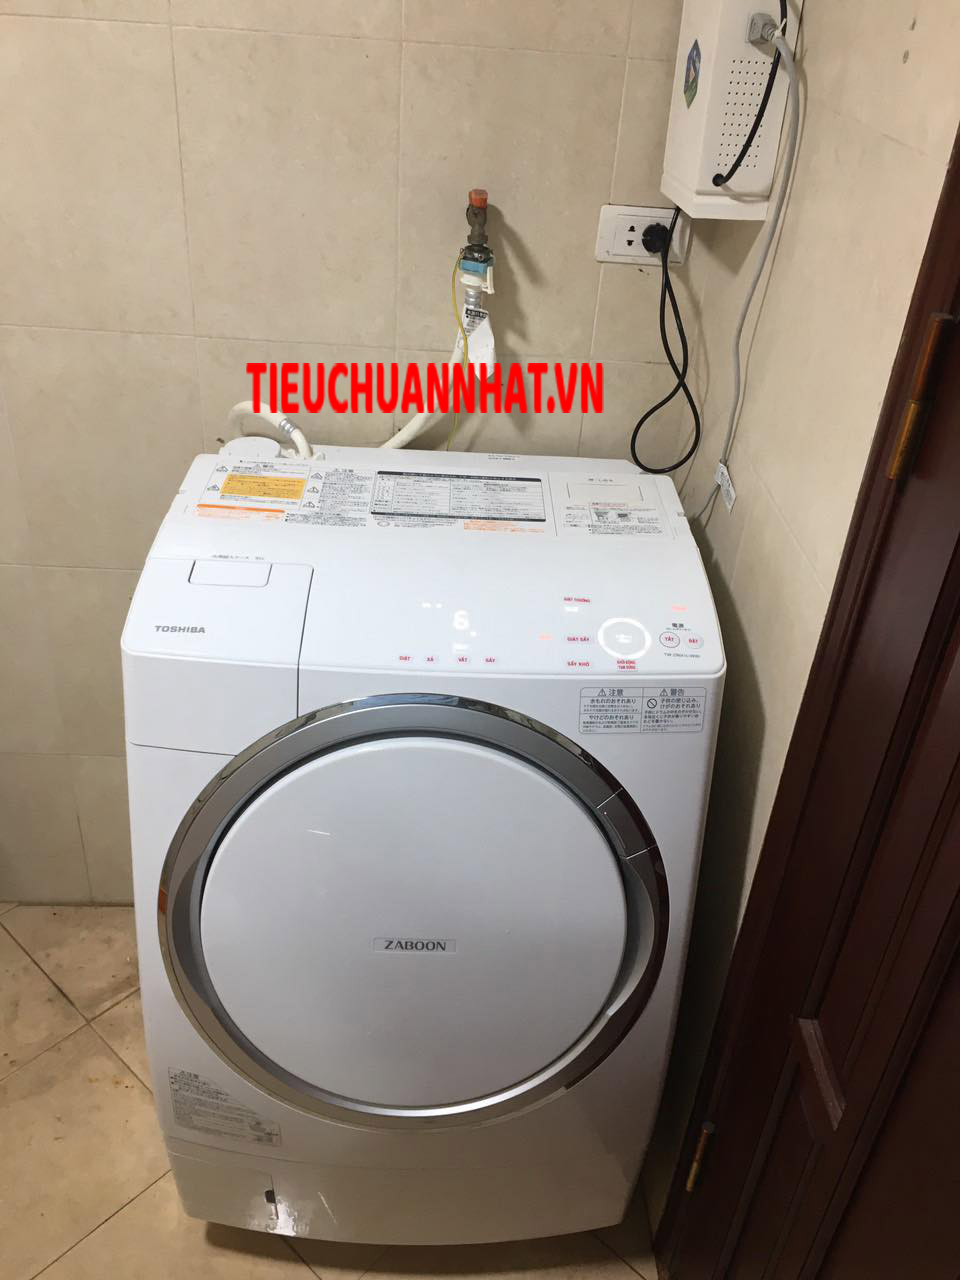 Bảng mã lỗi máy giặt Toshiba Nội địa